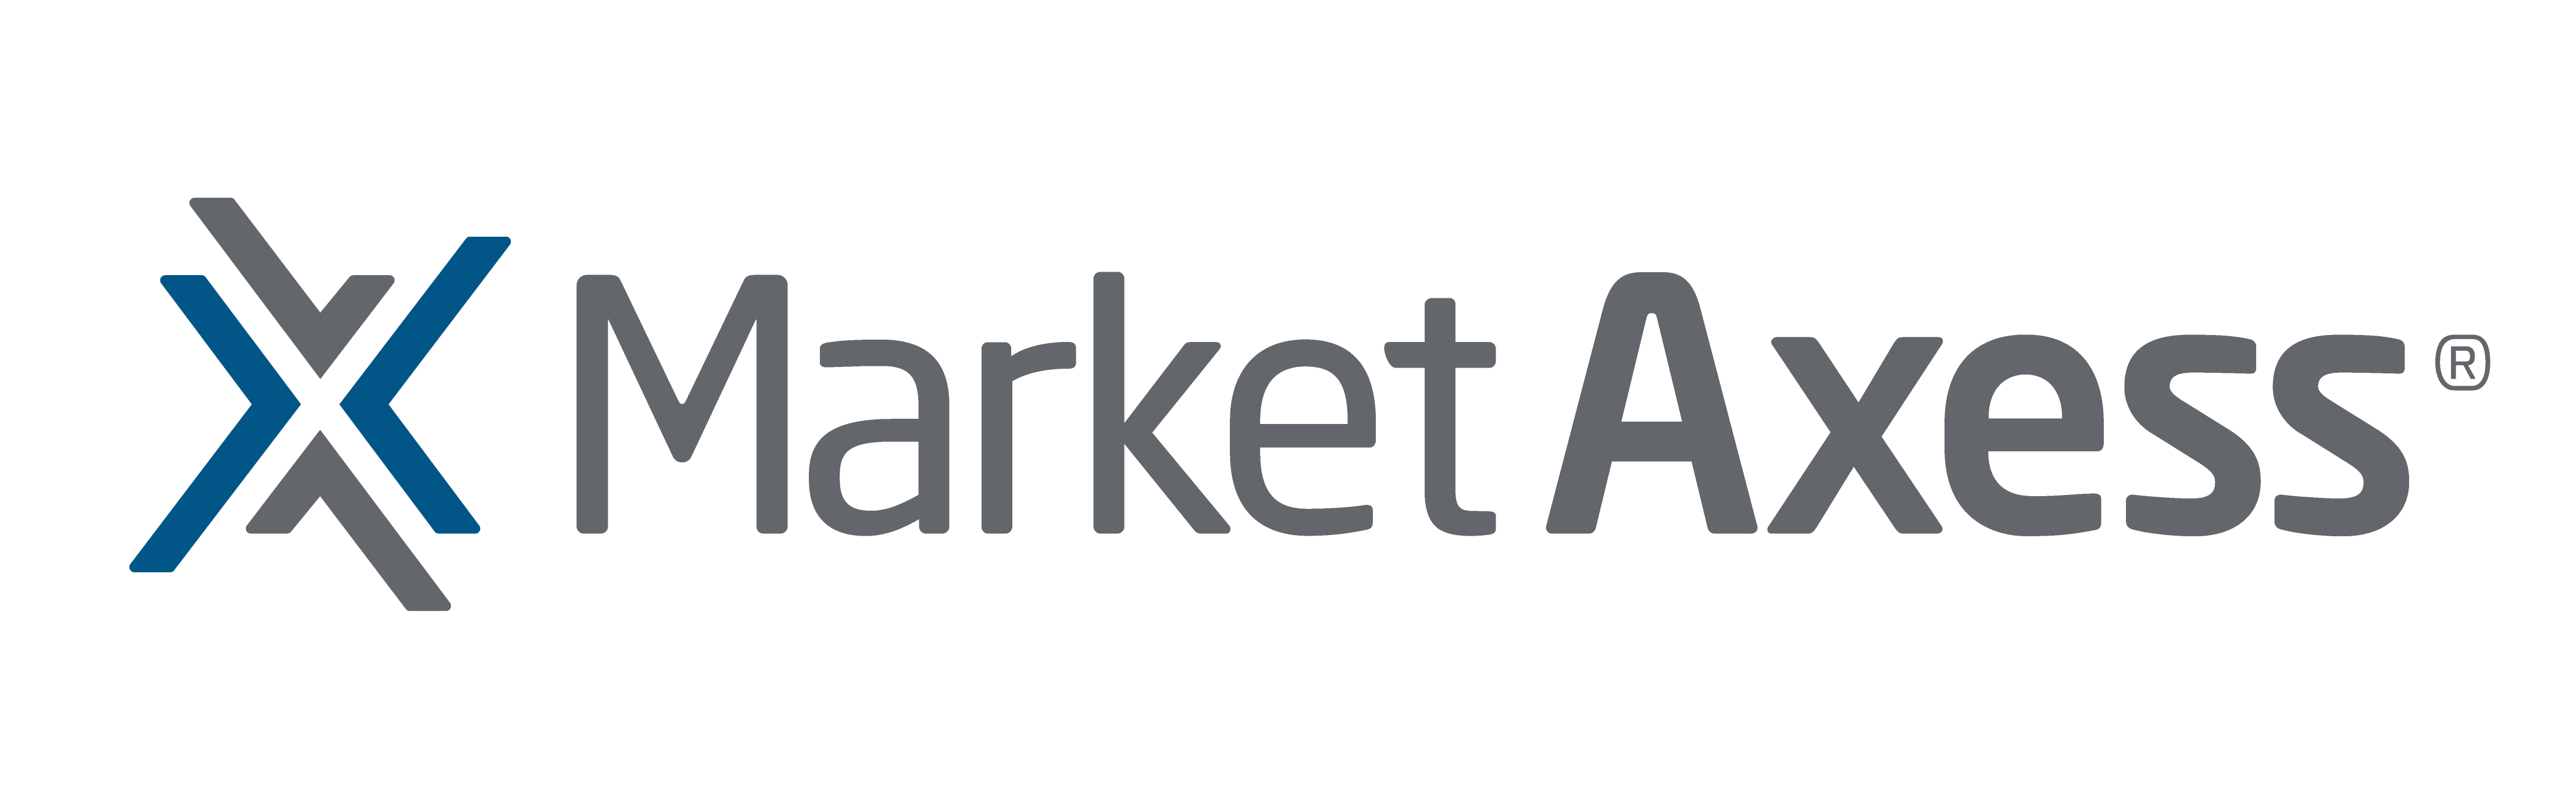 Market Axess Logo